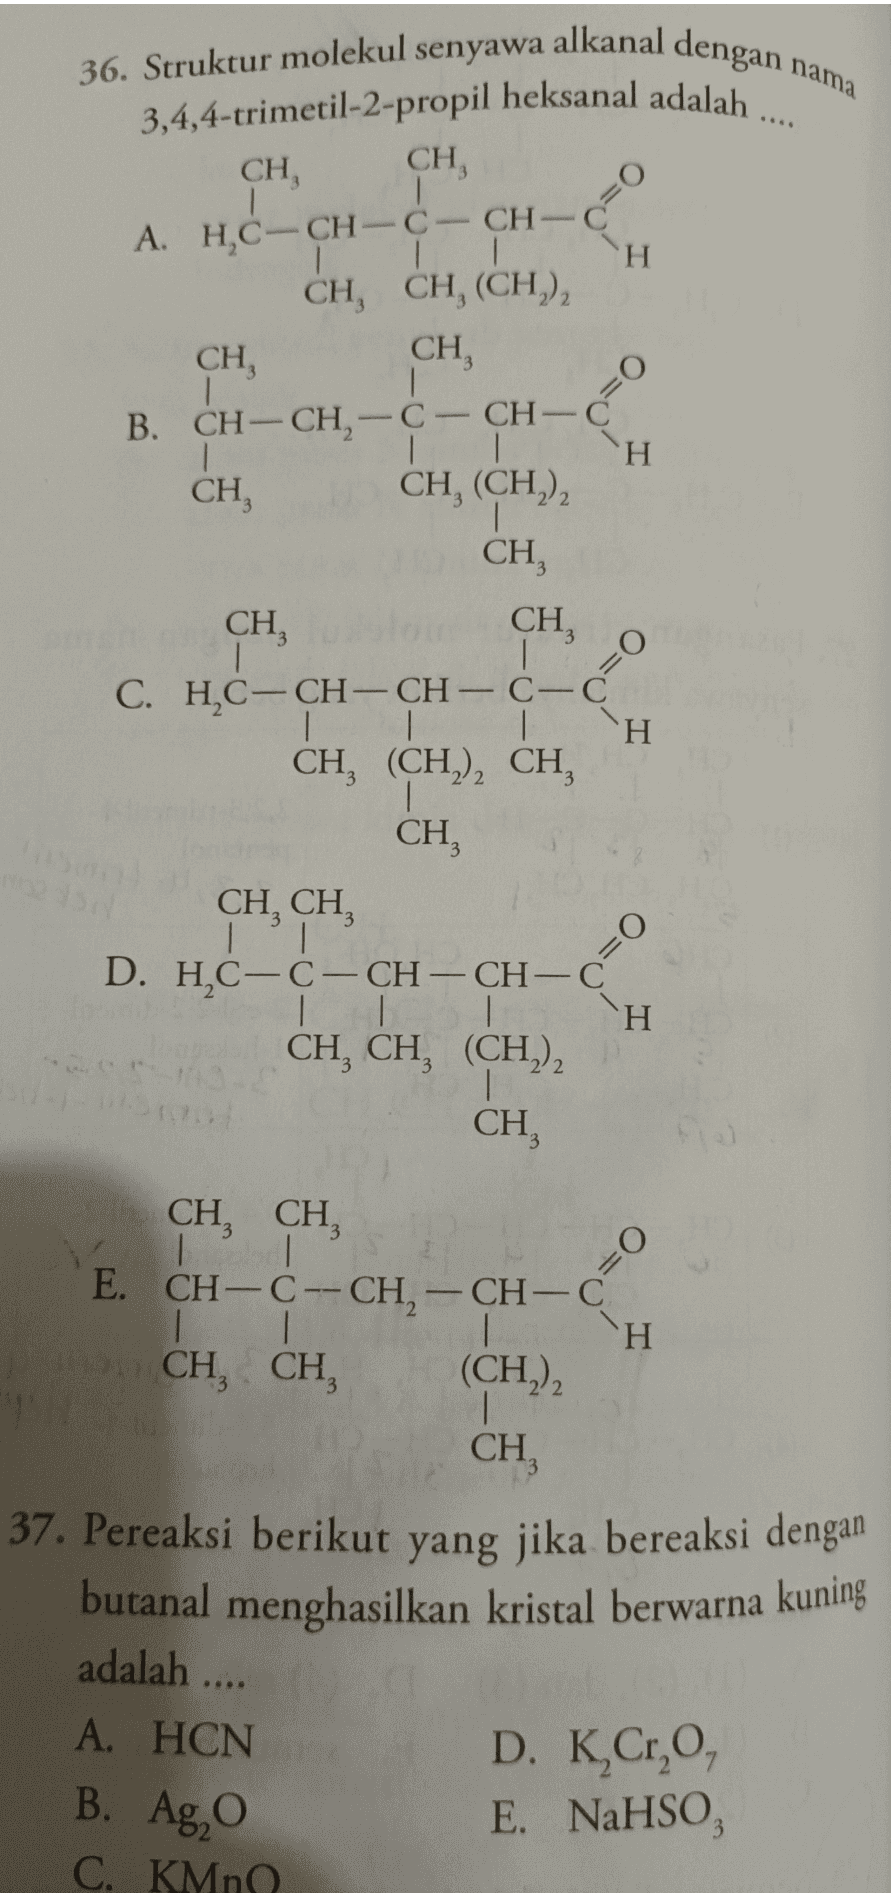 36. Struktur molekul senyawa alkanal dengan nama 3,4,4-trimetil-2-propil heksanal adalah .... CH CH, 1 A. HỌC-CH-C CH-C 1 H CH, CH, (CH)2 CH, CH 1 B. CH-CH2-C-CH-C H CH, CH, (CH), , CH, CH CH, C. H,C-CH-CH- C-C 1 CH, (CH2)2 CH CH O= CH, CH TI o D. HC-C-CH-CH-C 1 1 H CH, CH, (CH2)2 1 CH, - CH, CH, IT E. CH-CH-CH-CH-C 1 H CH, CH, (CH2)2 1 CH, 37. Pereaksi berikut yang jika bereaksi dengan butanal menghasilkan kristal berwarna kuning adalah .... A. HCN B. Ag, D. K,Cr,O, E. NaHSO, C. KMn 